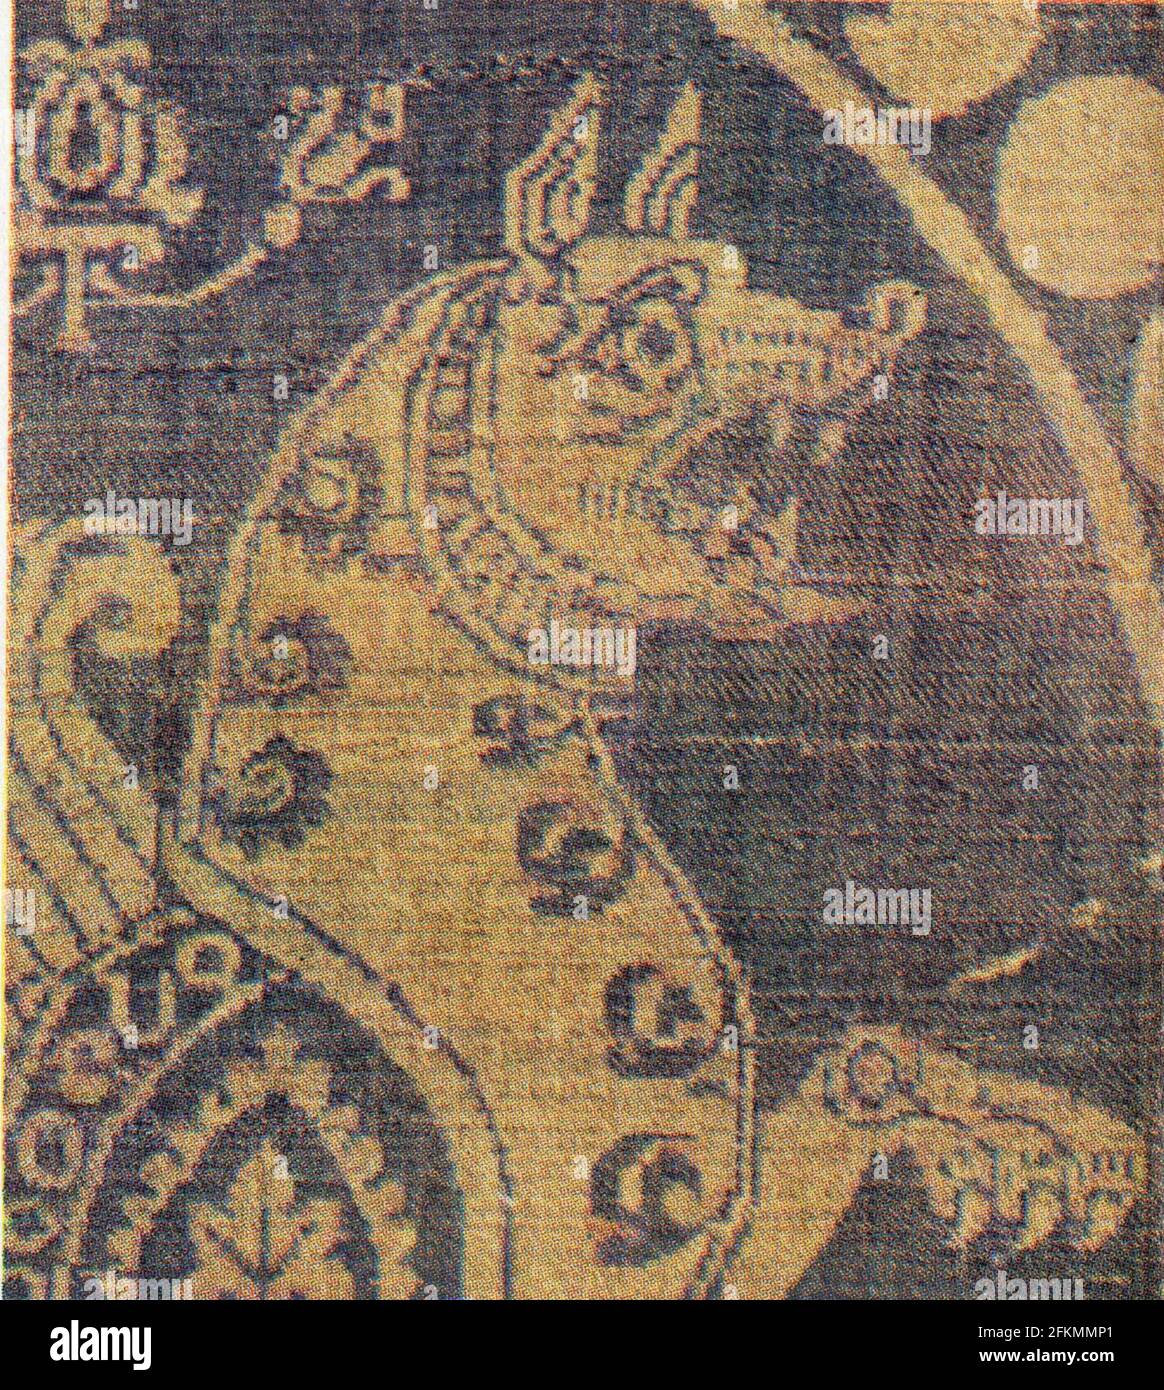 Tissus d'époque sassanide évoquant les animaux fabuleux d'Asie centrale Stock Photo